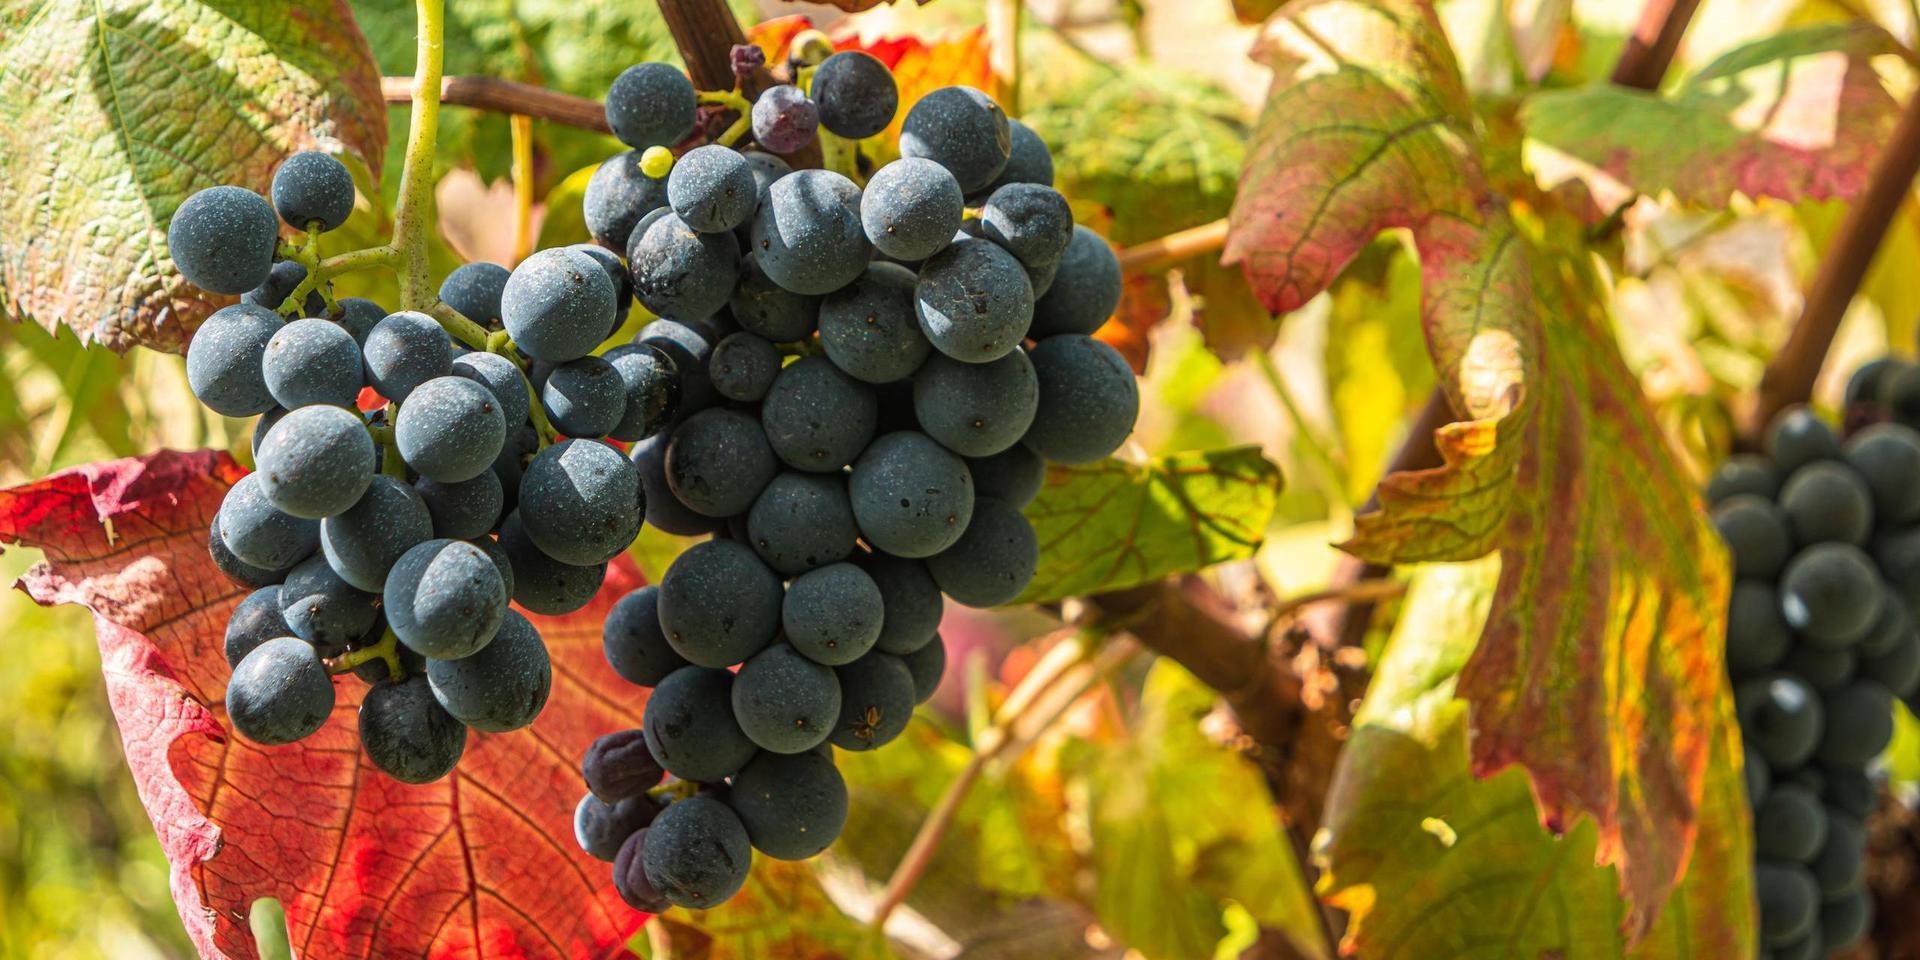 ”Äkta, genuint, lokalt ursprung och långa traditioner – det är värden som vinproducenterna vill lyfta fram. Men ofta är historien påhittad”, skriver GP:s vinskribent Marie Oskarsson.